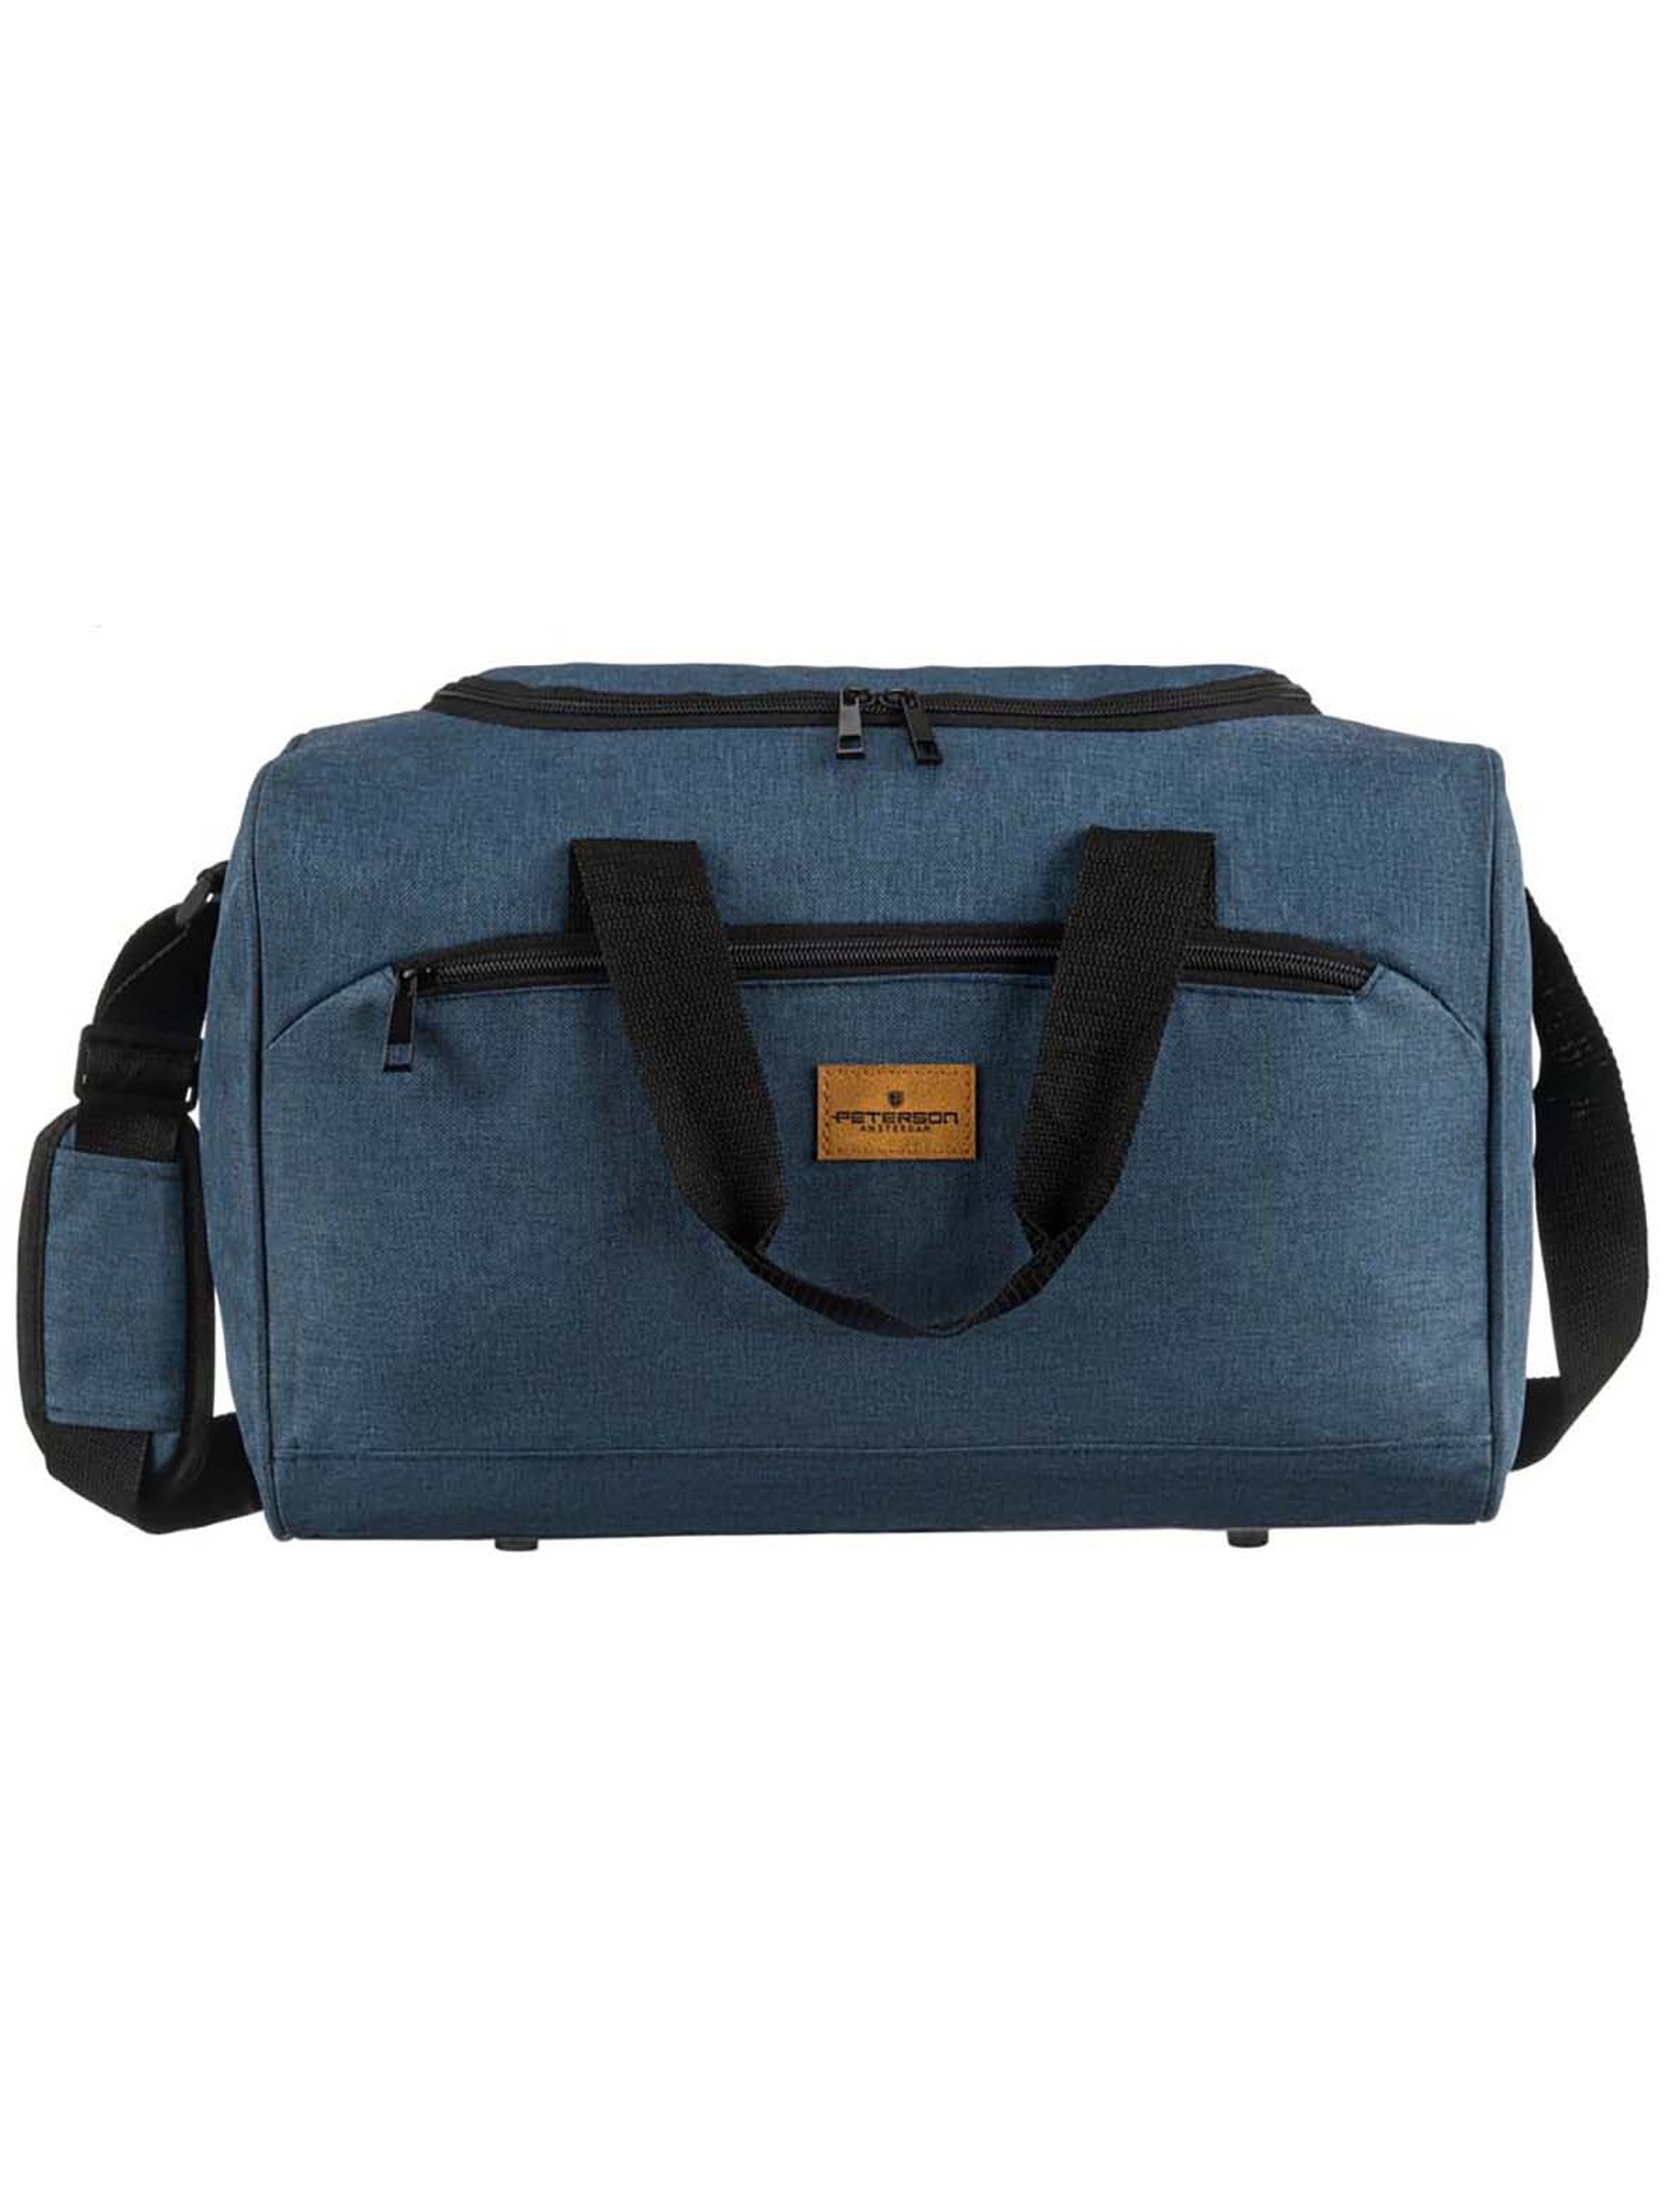 Granatowa torba podróżna idealna na bagaż podręczny - Peterson